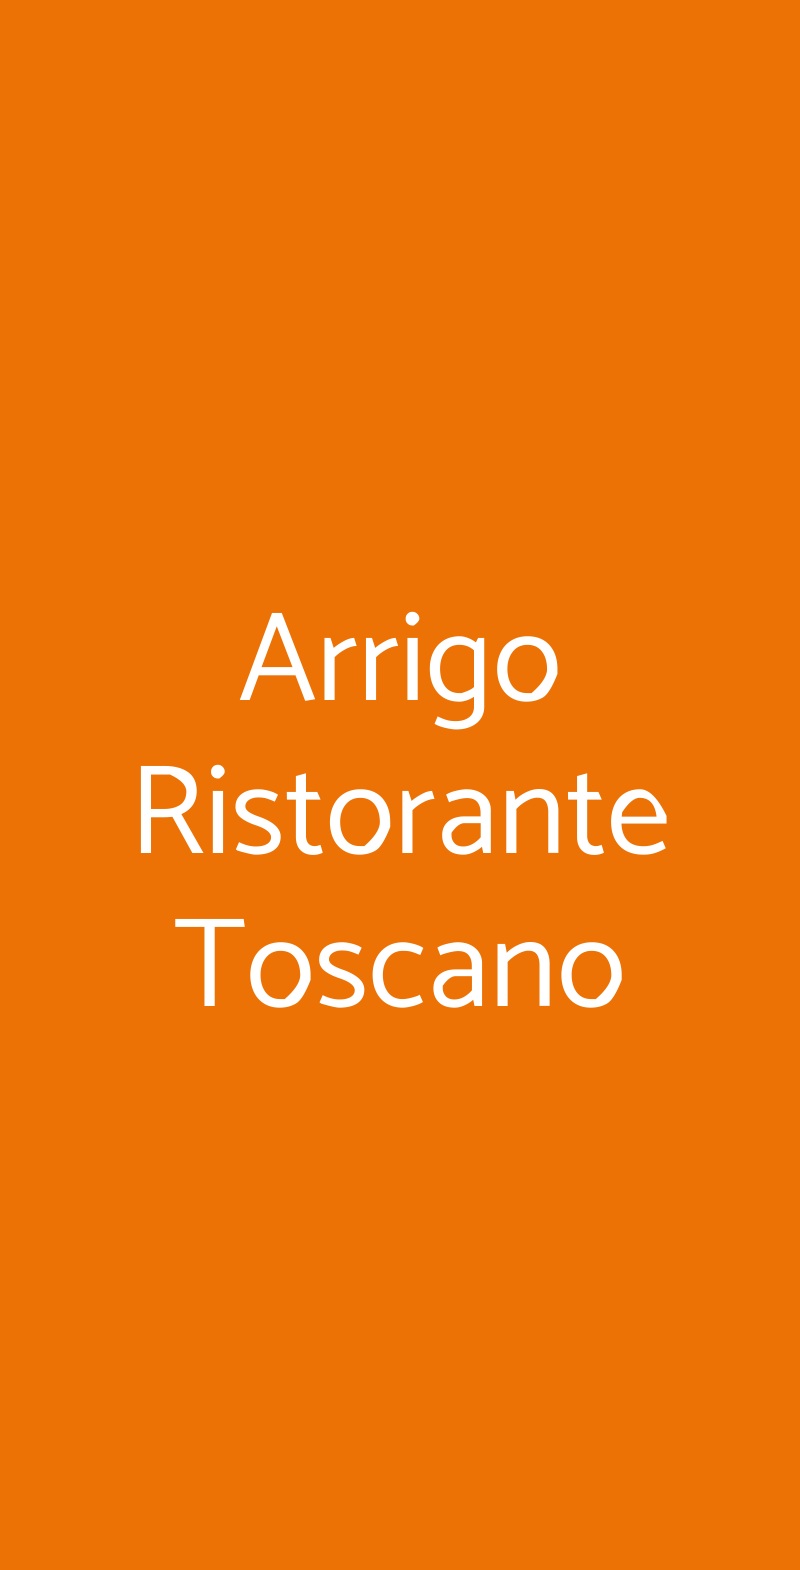 Arrigo Ristorante Toscano Milano menù 1 pagina